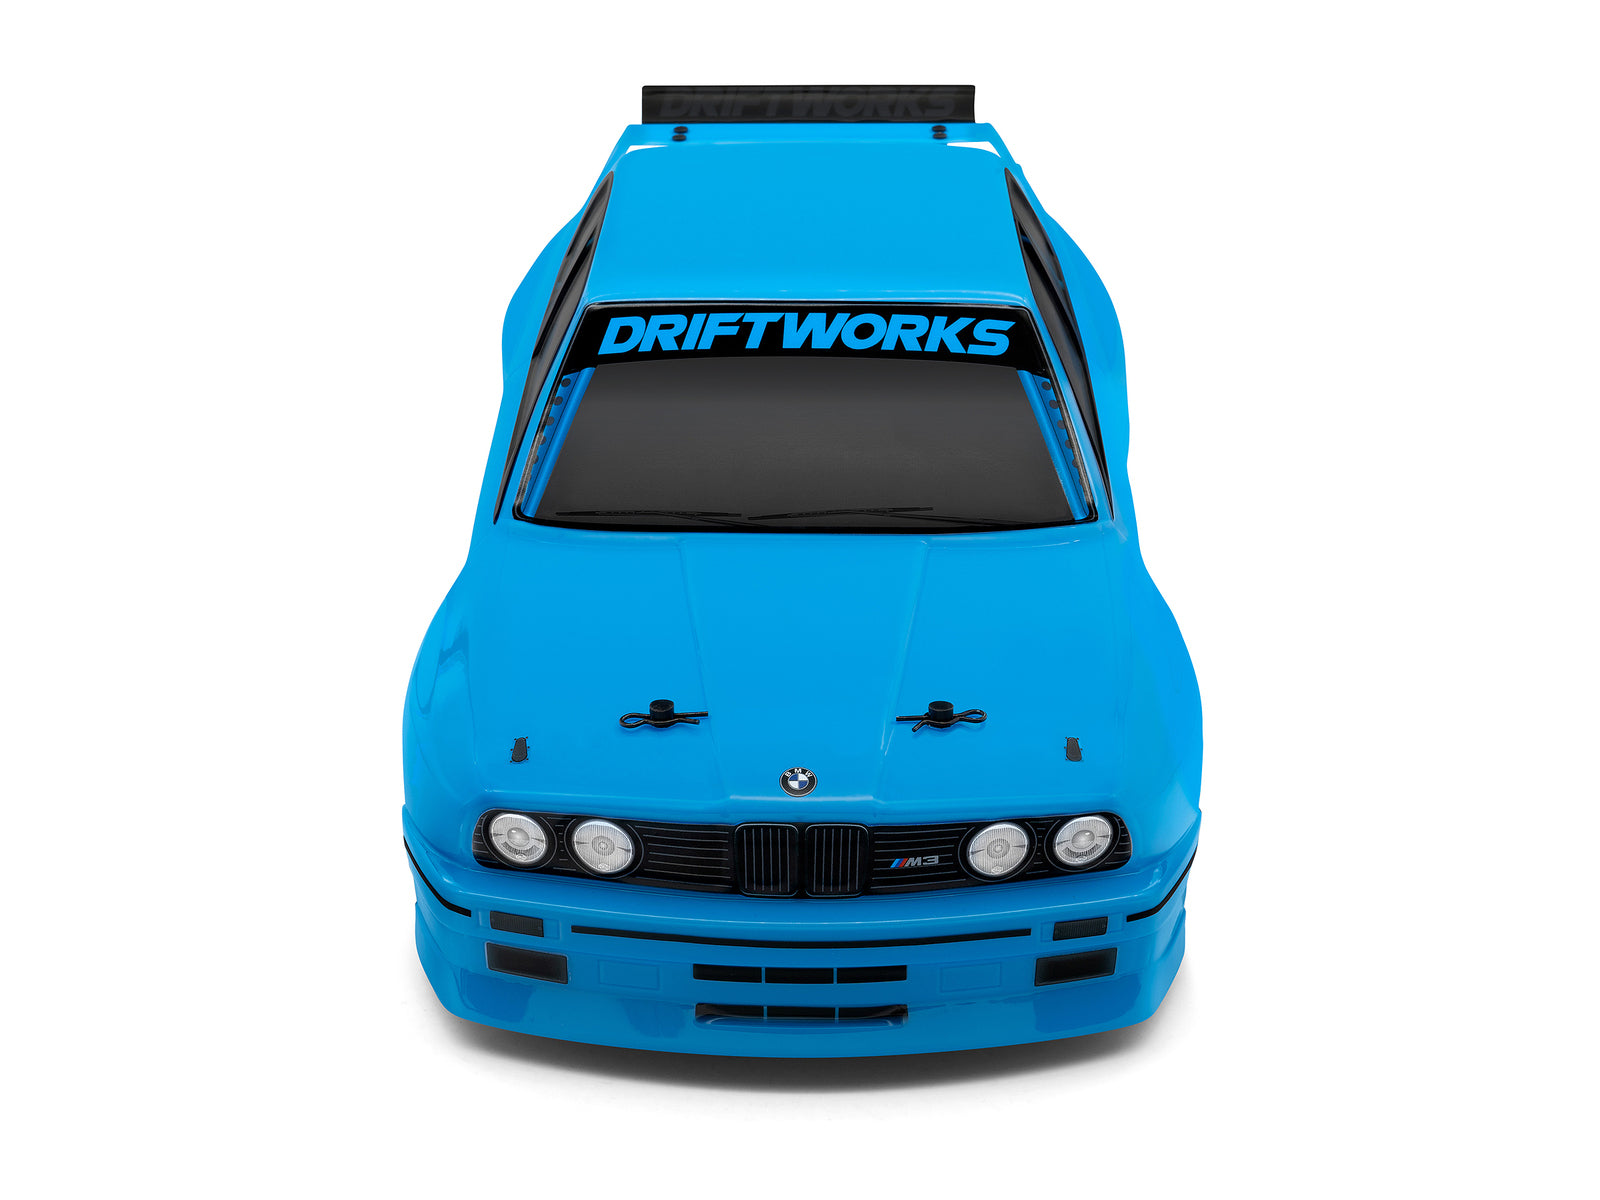 HPI 1/10 Sport 3 Drift BMW E30 Driftworks Item No.: HPI-160422 - [Sunshine-Coast] - HPI - [RC-Car] - [Scale-Model]